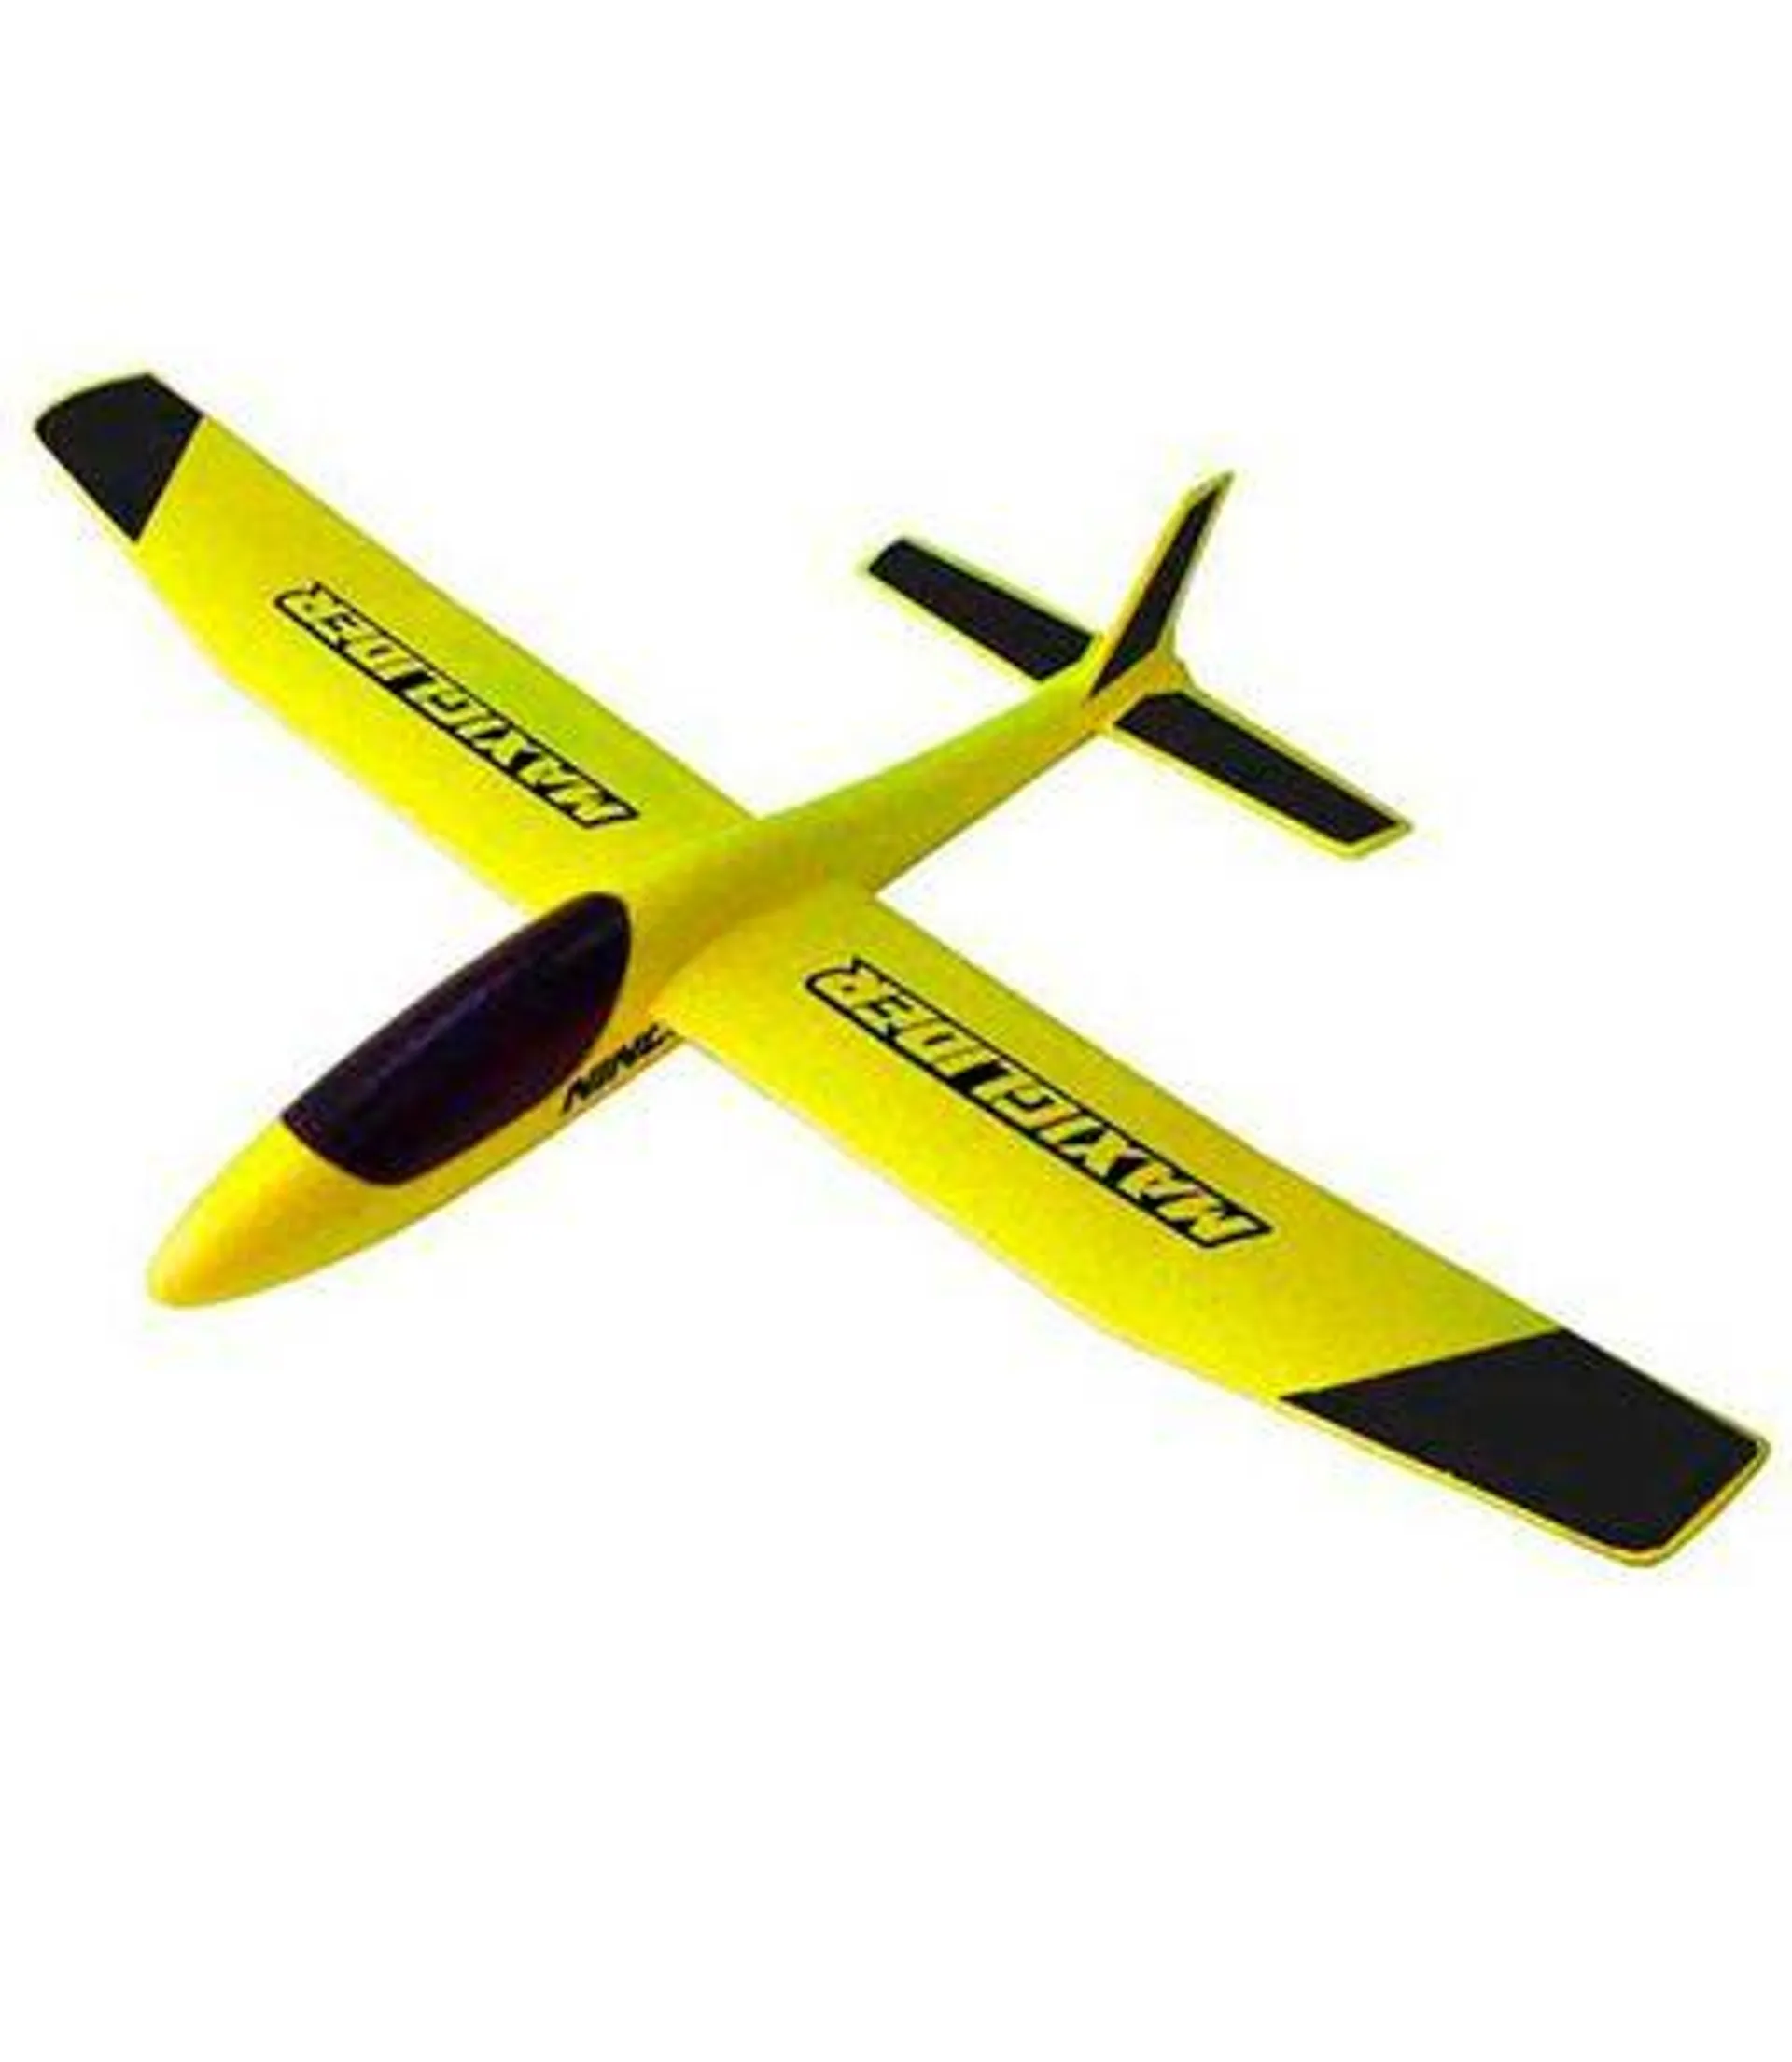 Glider Maxi Glider 85 cm - NINCO